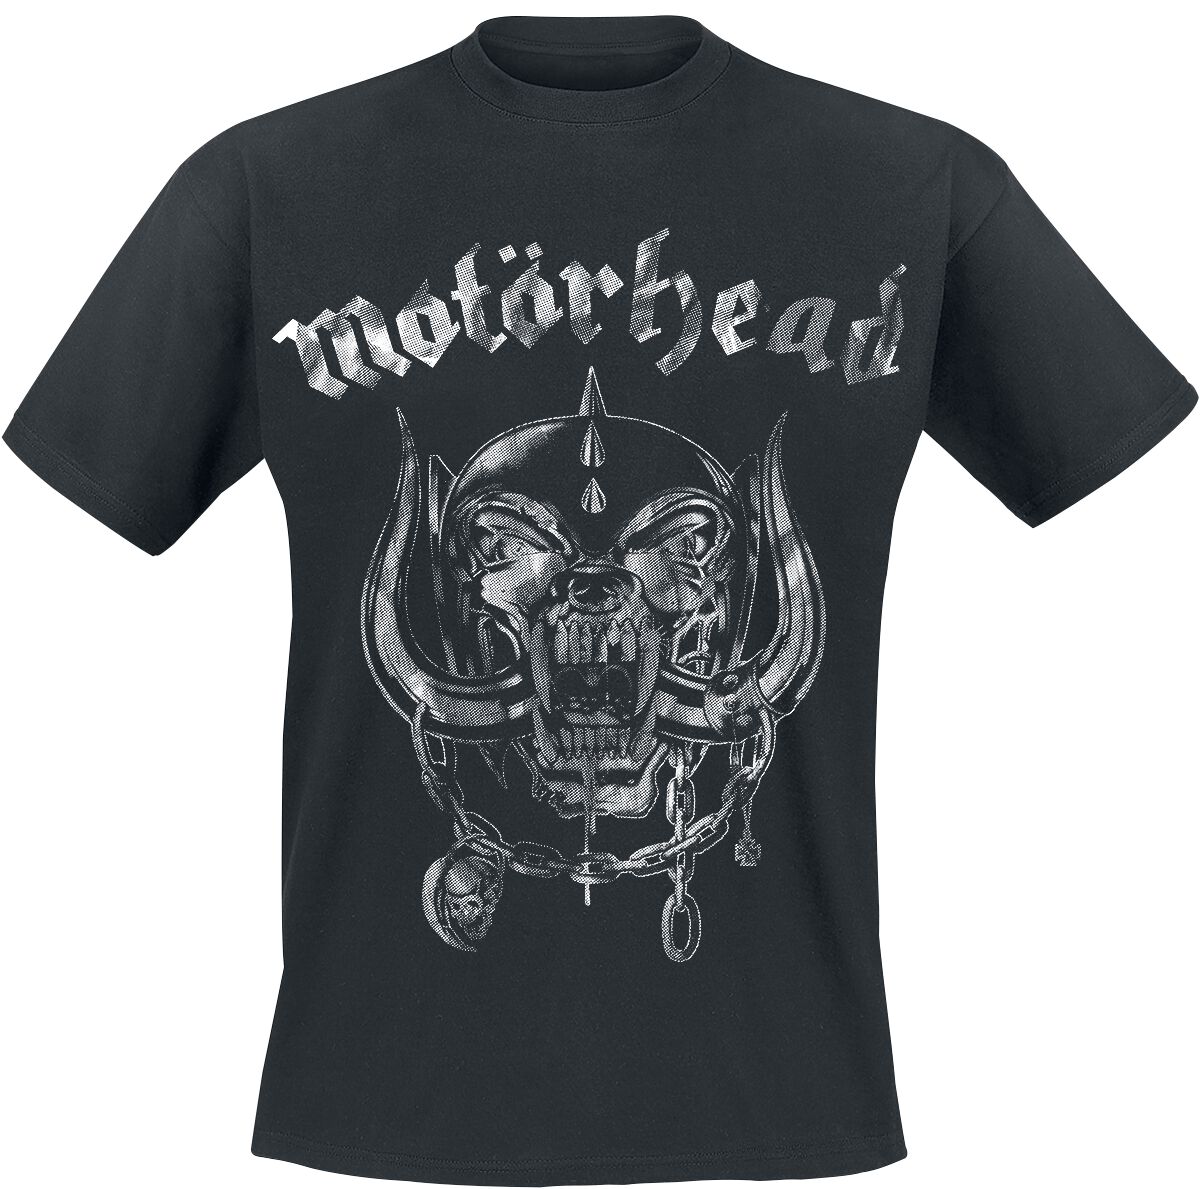 Motörhead T-Shirt - Large Warpig Logo - S bis 4XL - für Männer - Größe 4XL - schwarz  - Lizenziertes Merchandise!